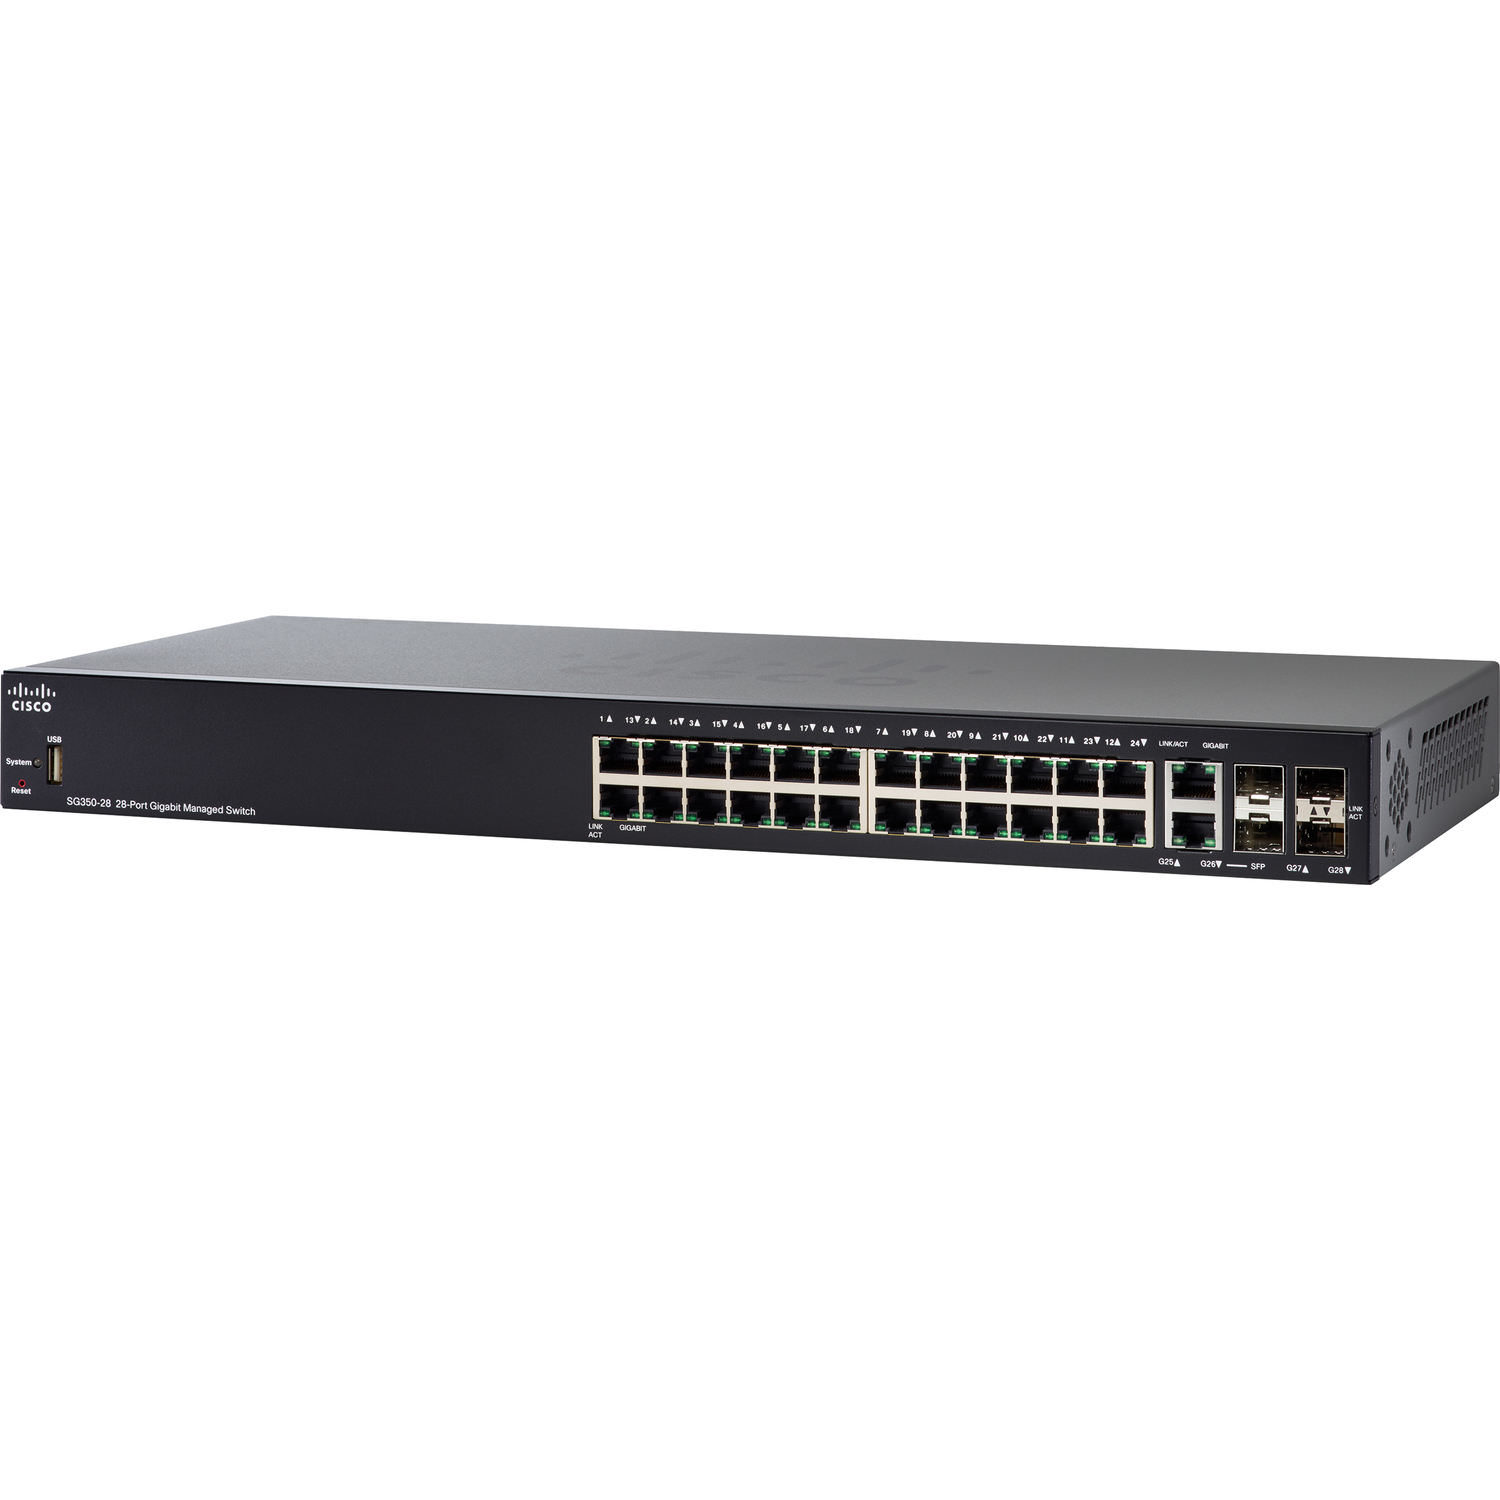 Cisco SG350-28P 28-Port Gigabit POE Managed Switch - image 1 of 3